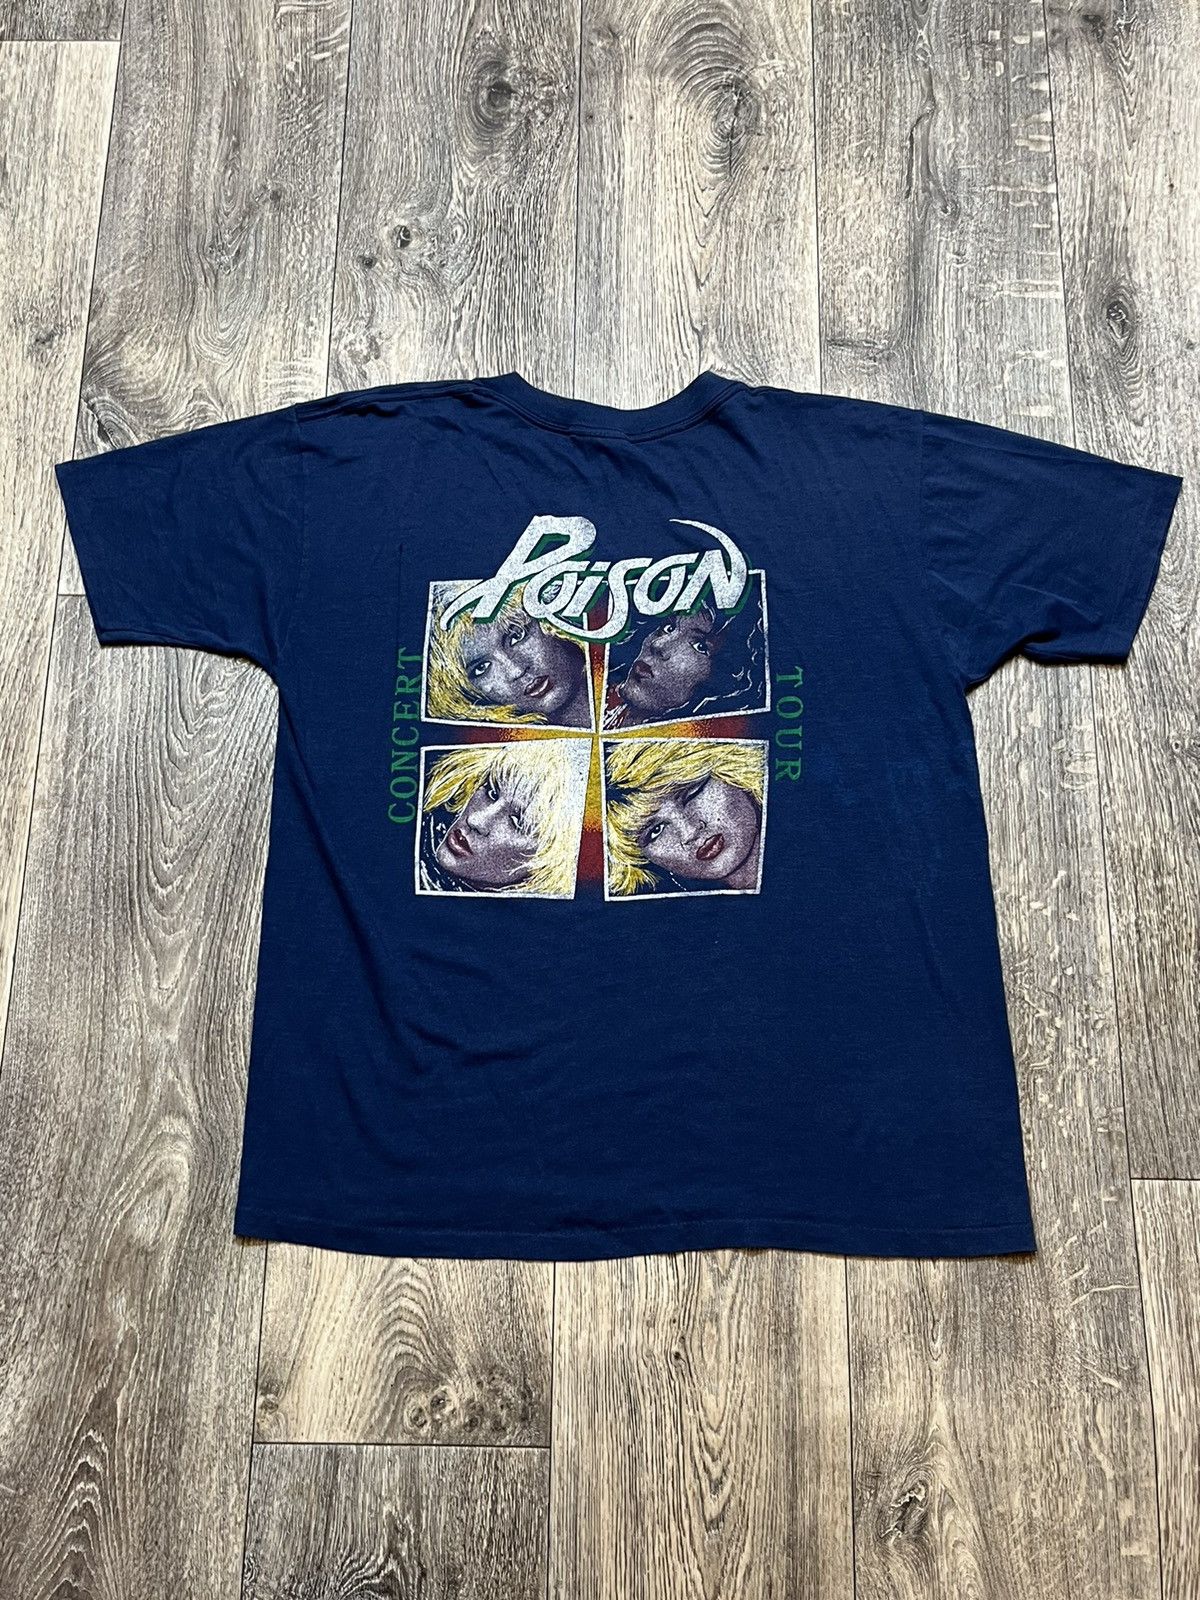 Vintage Vintage Poison concert tour 80-90s t-shirt tee Size XL / US 12-14 / IT 48-50 - 8 Thumbnail